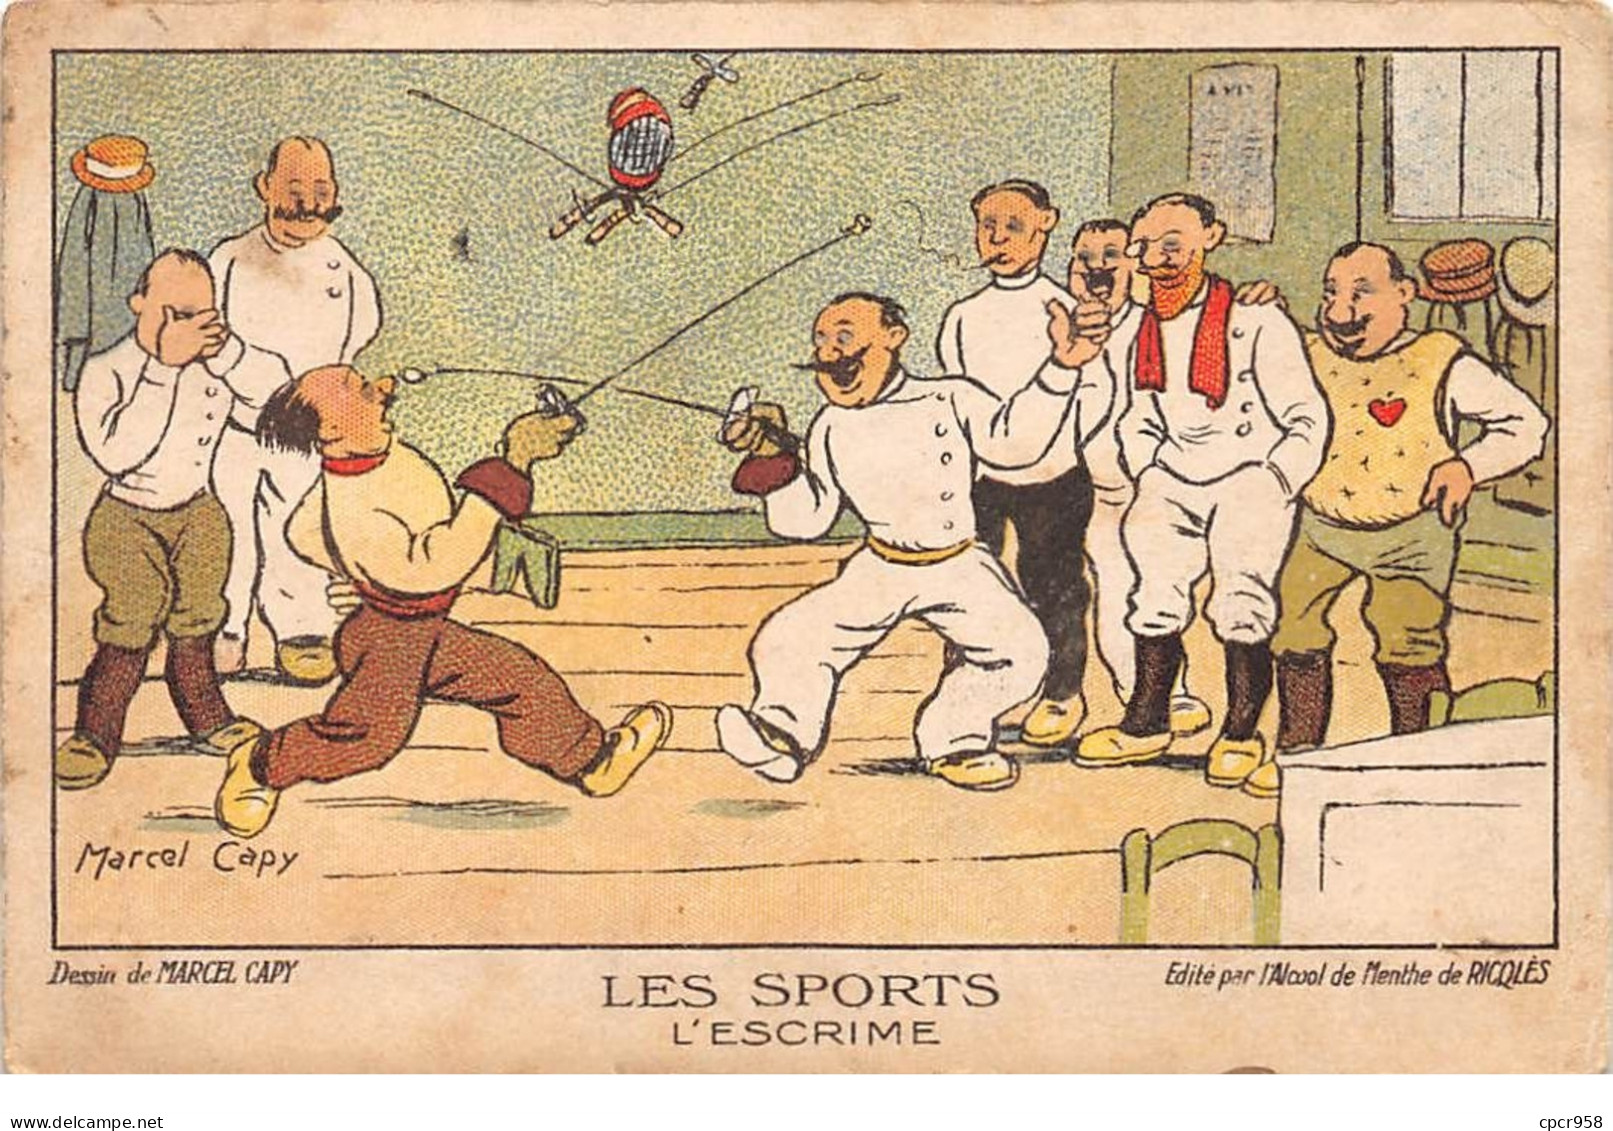 Sports - N°69102 - Escrime - Dessin De Marcel Capy - Alcool De Menthe De Ricqlès - Carte Publicitaire - Schermen